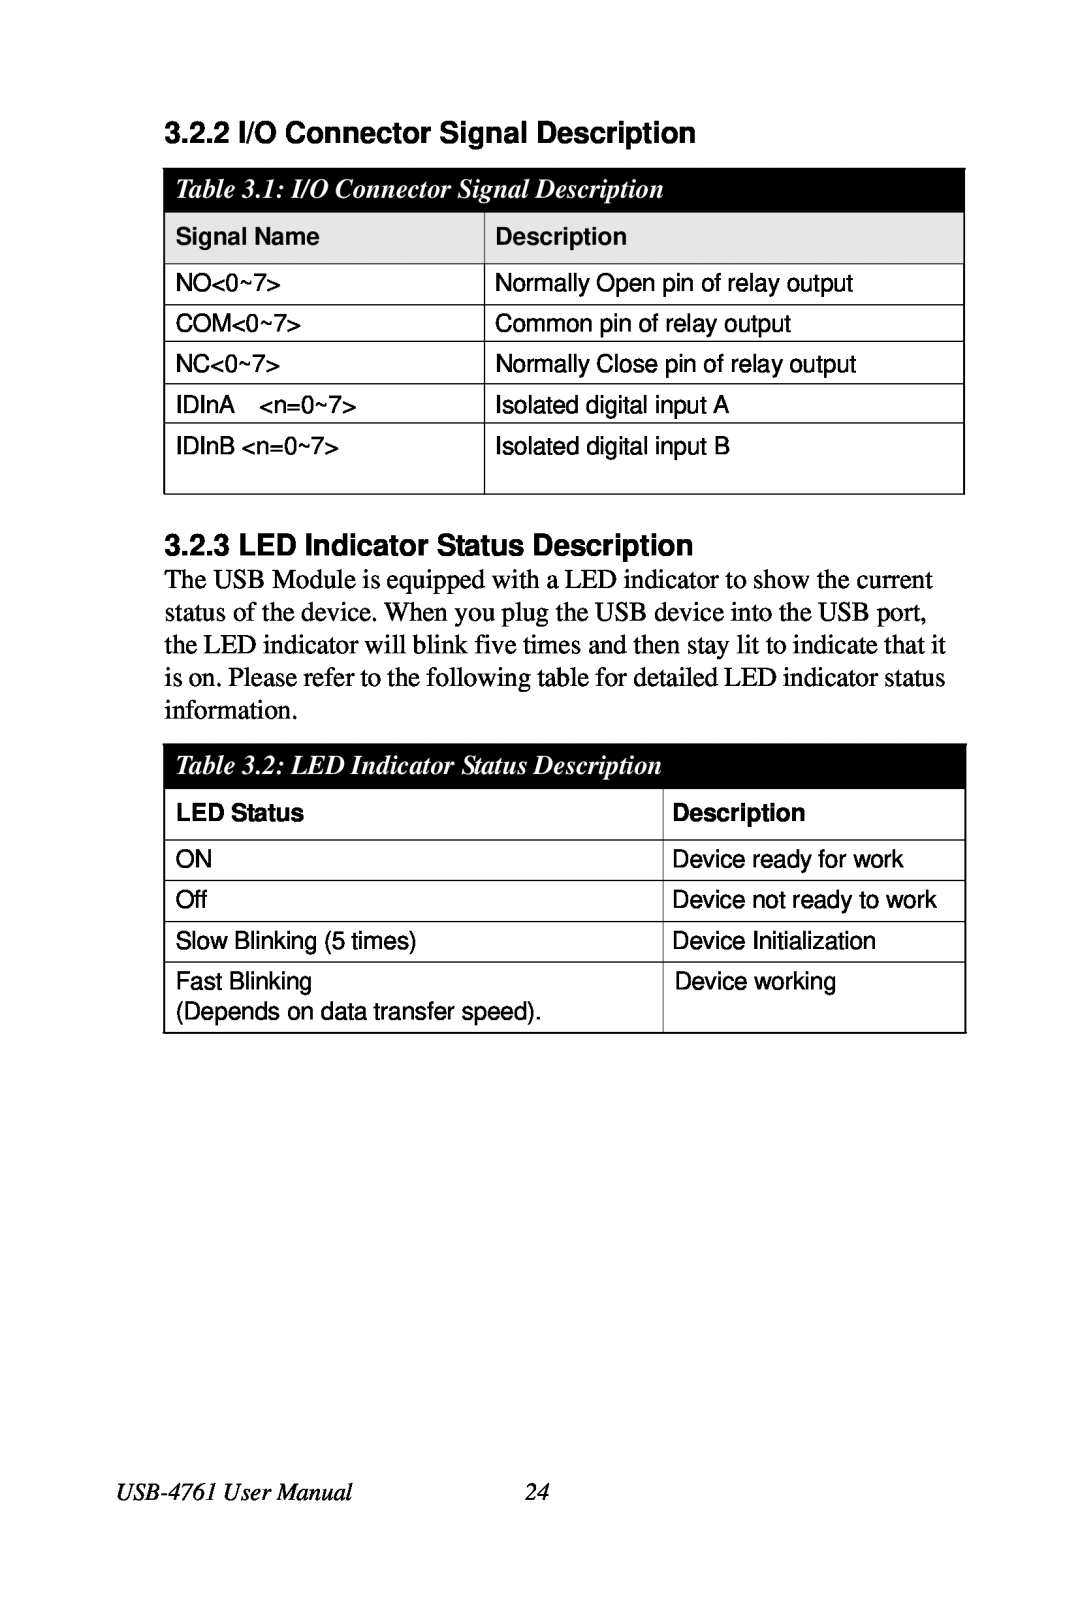 Omega Vehicle Security USB-4761 manual 3.2.2 I/O Connector Signal Description, LED Indicator Status Description 